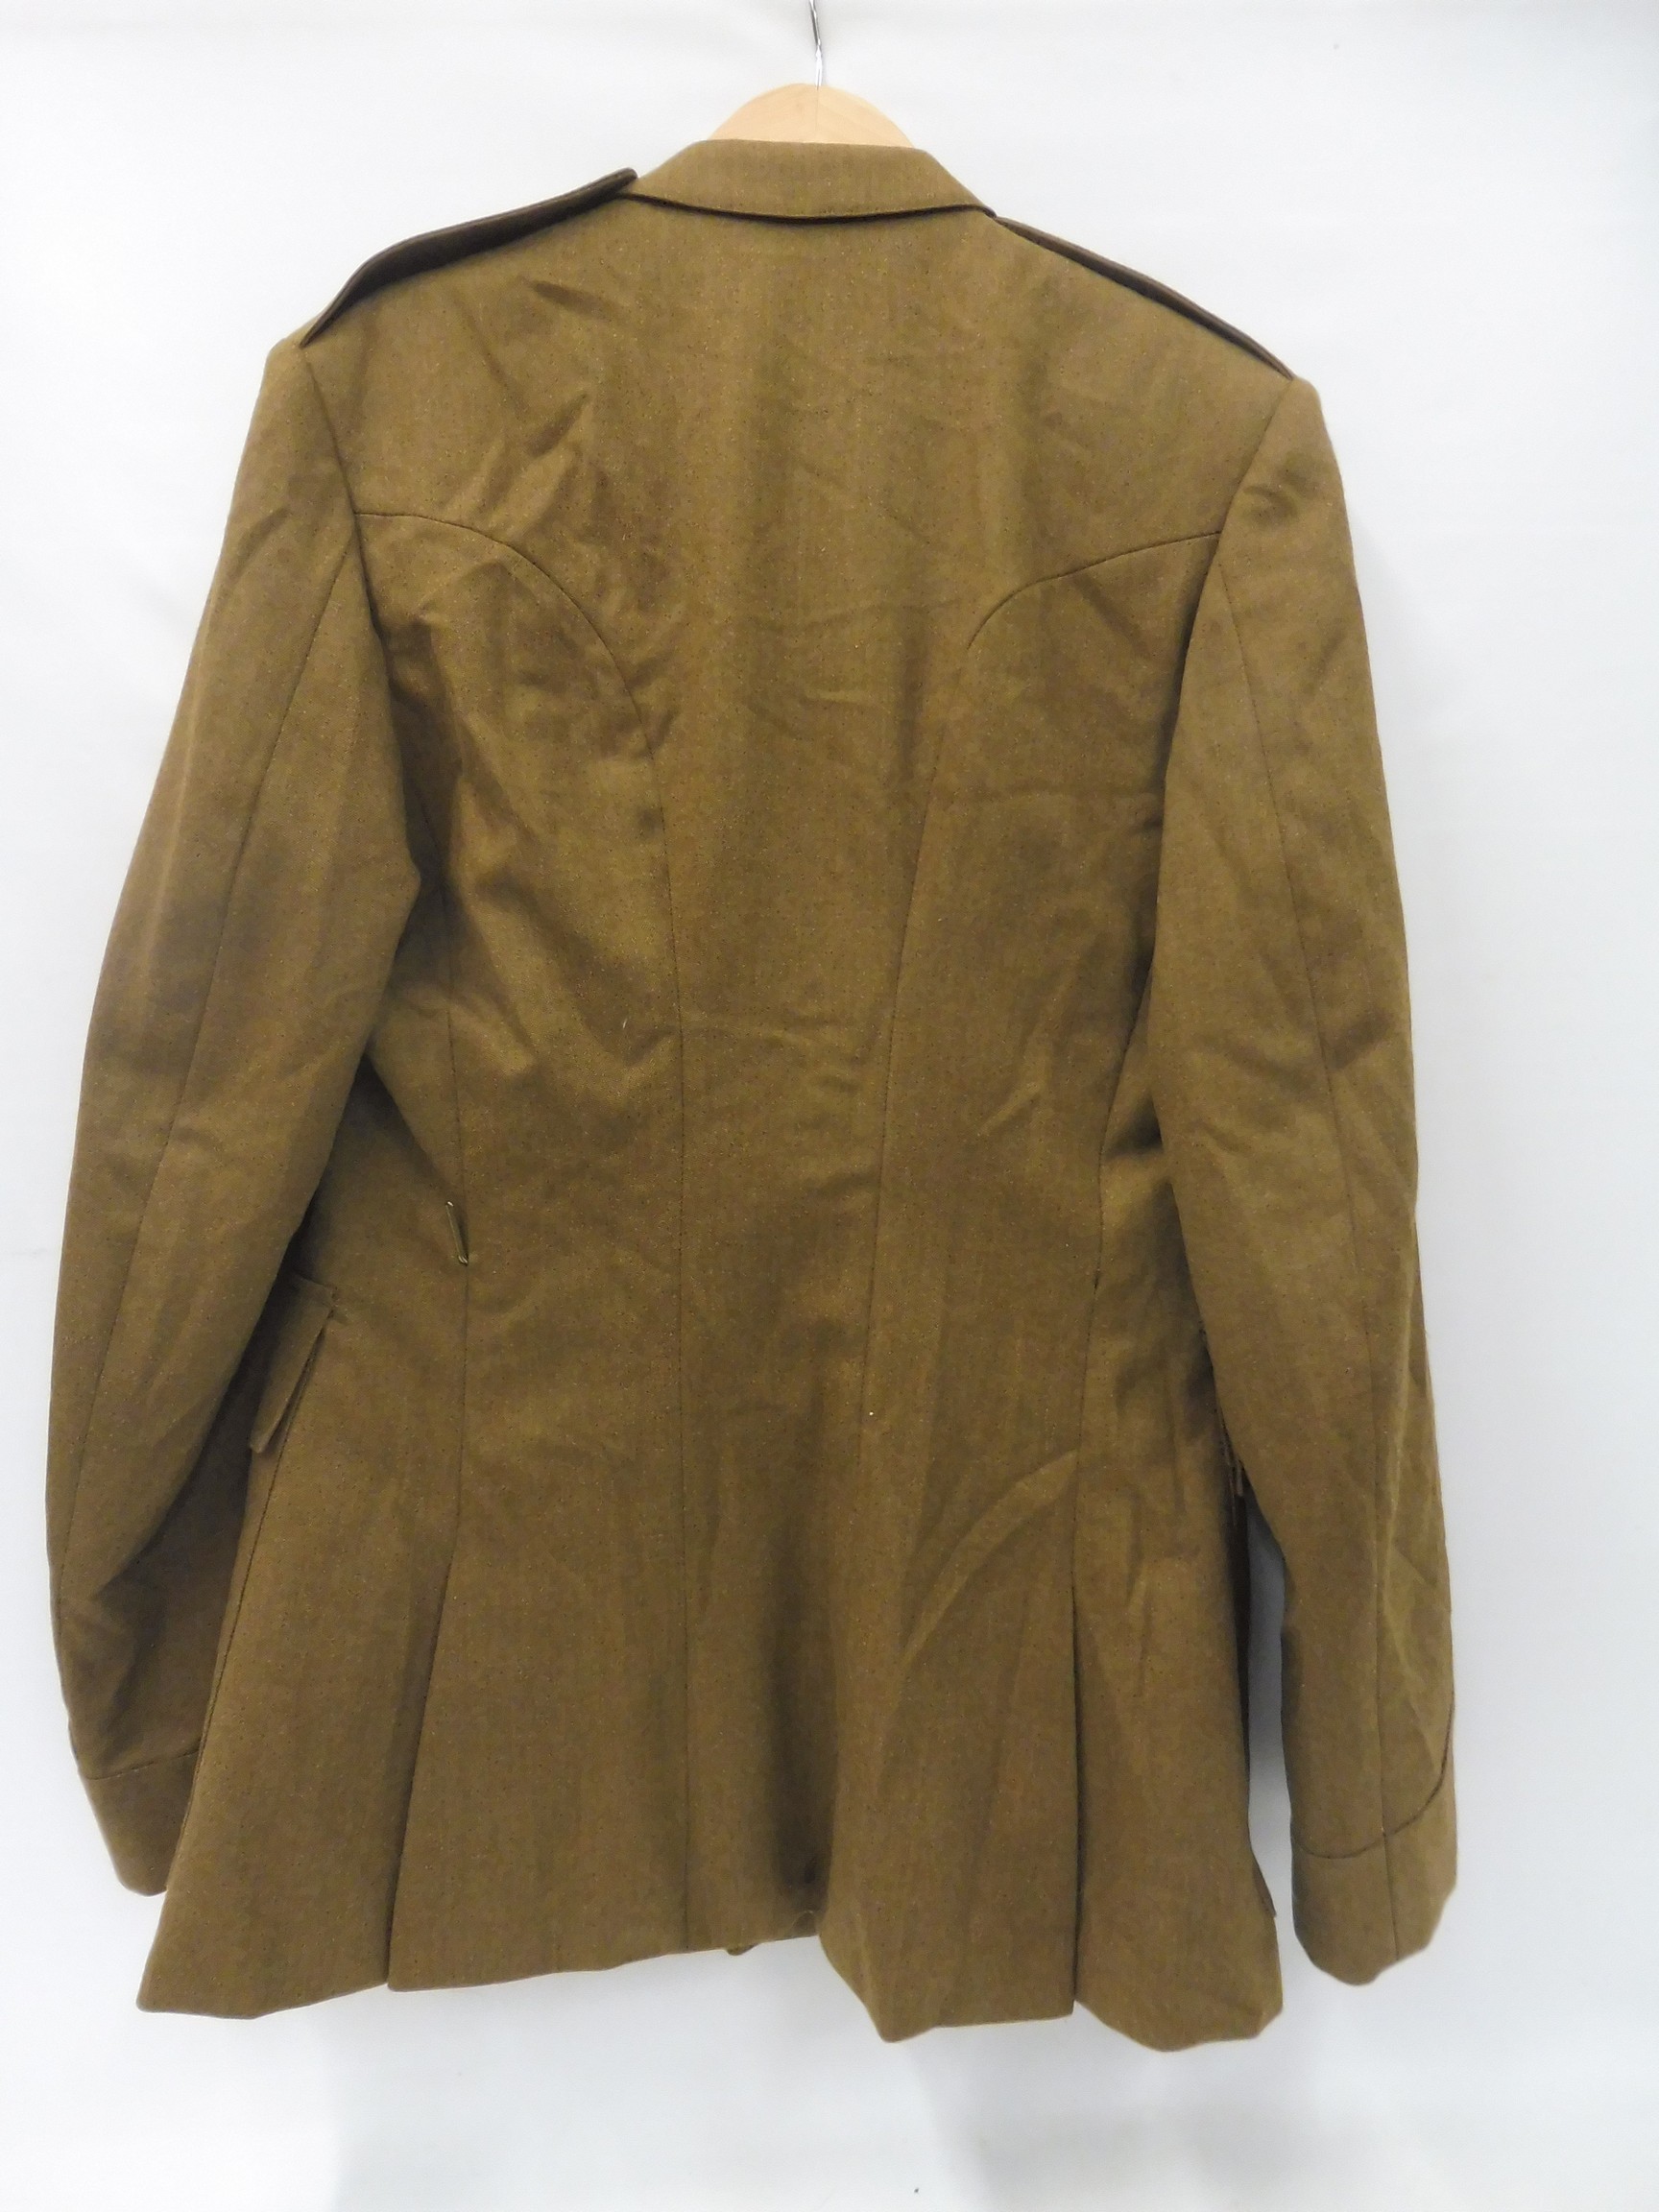 An F.A.D. No.2 uniform, Royal Logistics Corps, jacket size 182/112/96, trouser size 78/84/100, no - Image 6 of 6